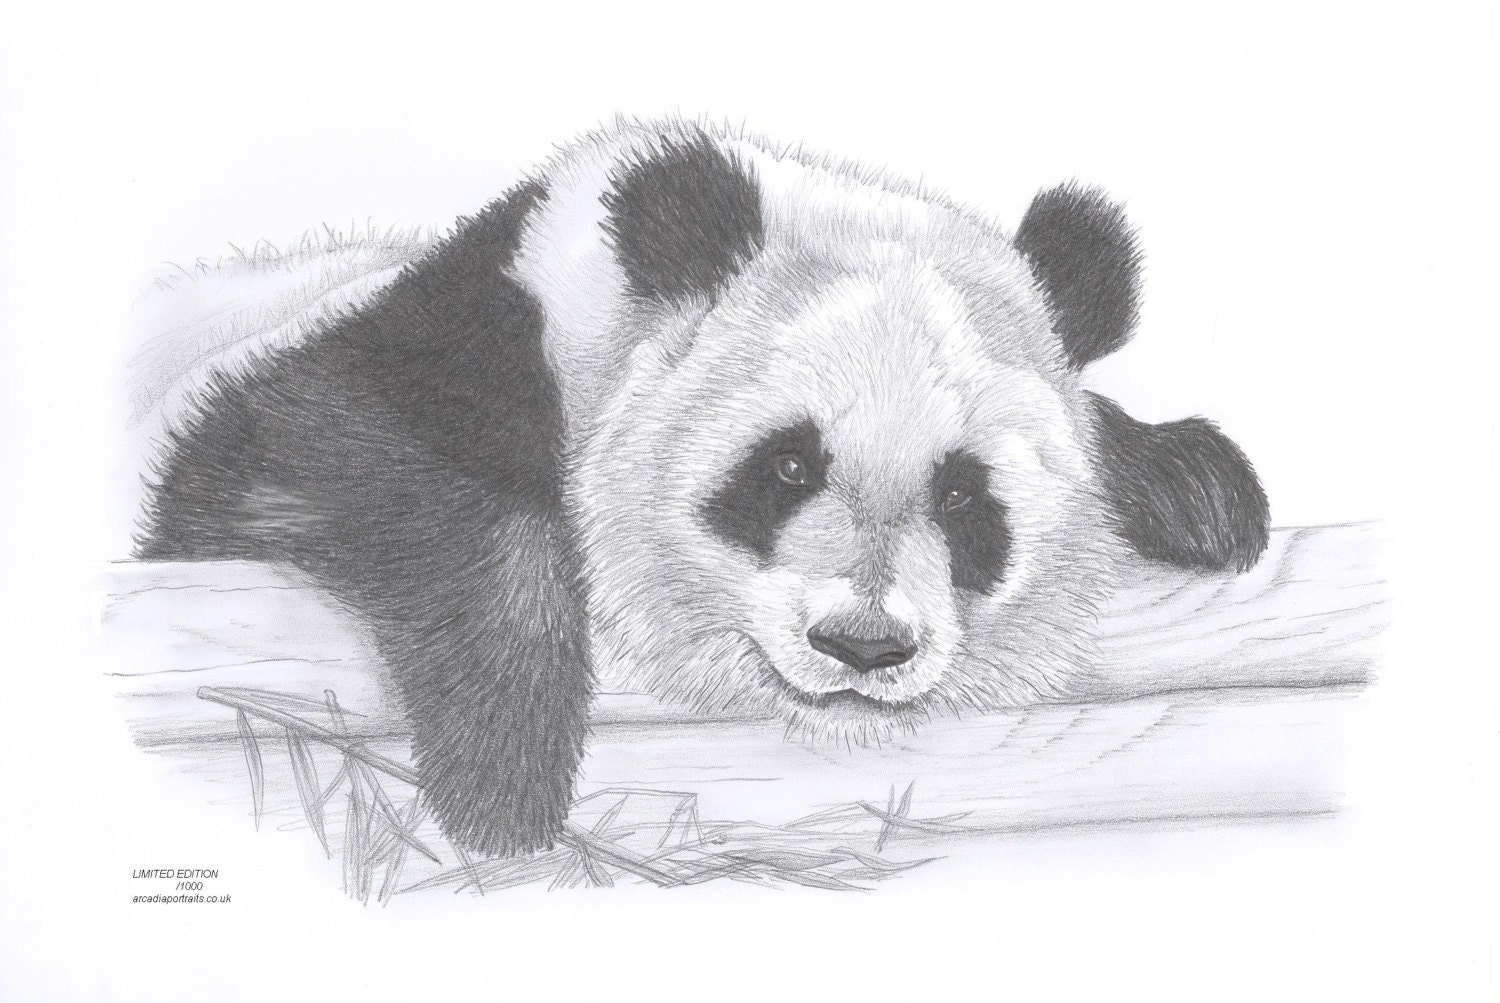 Adult panda bear